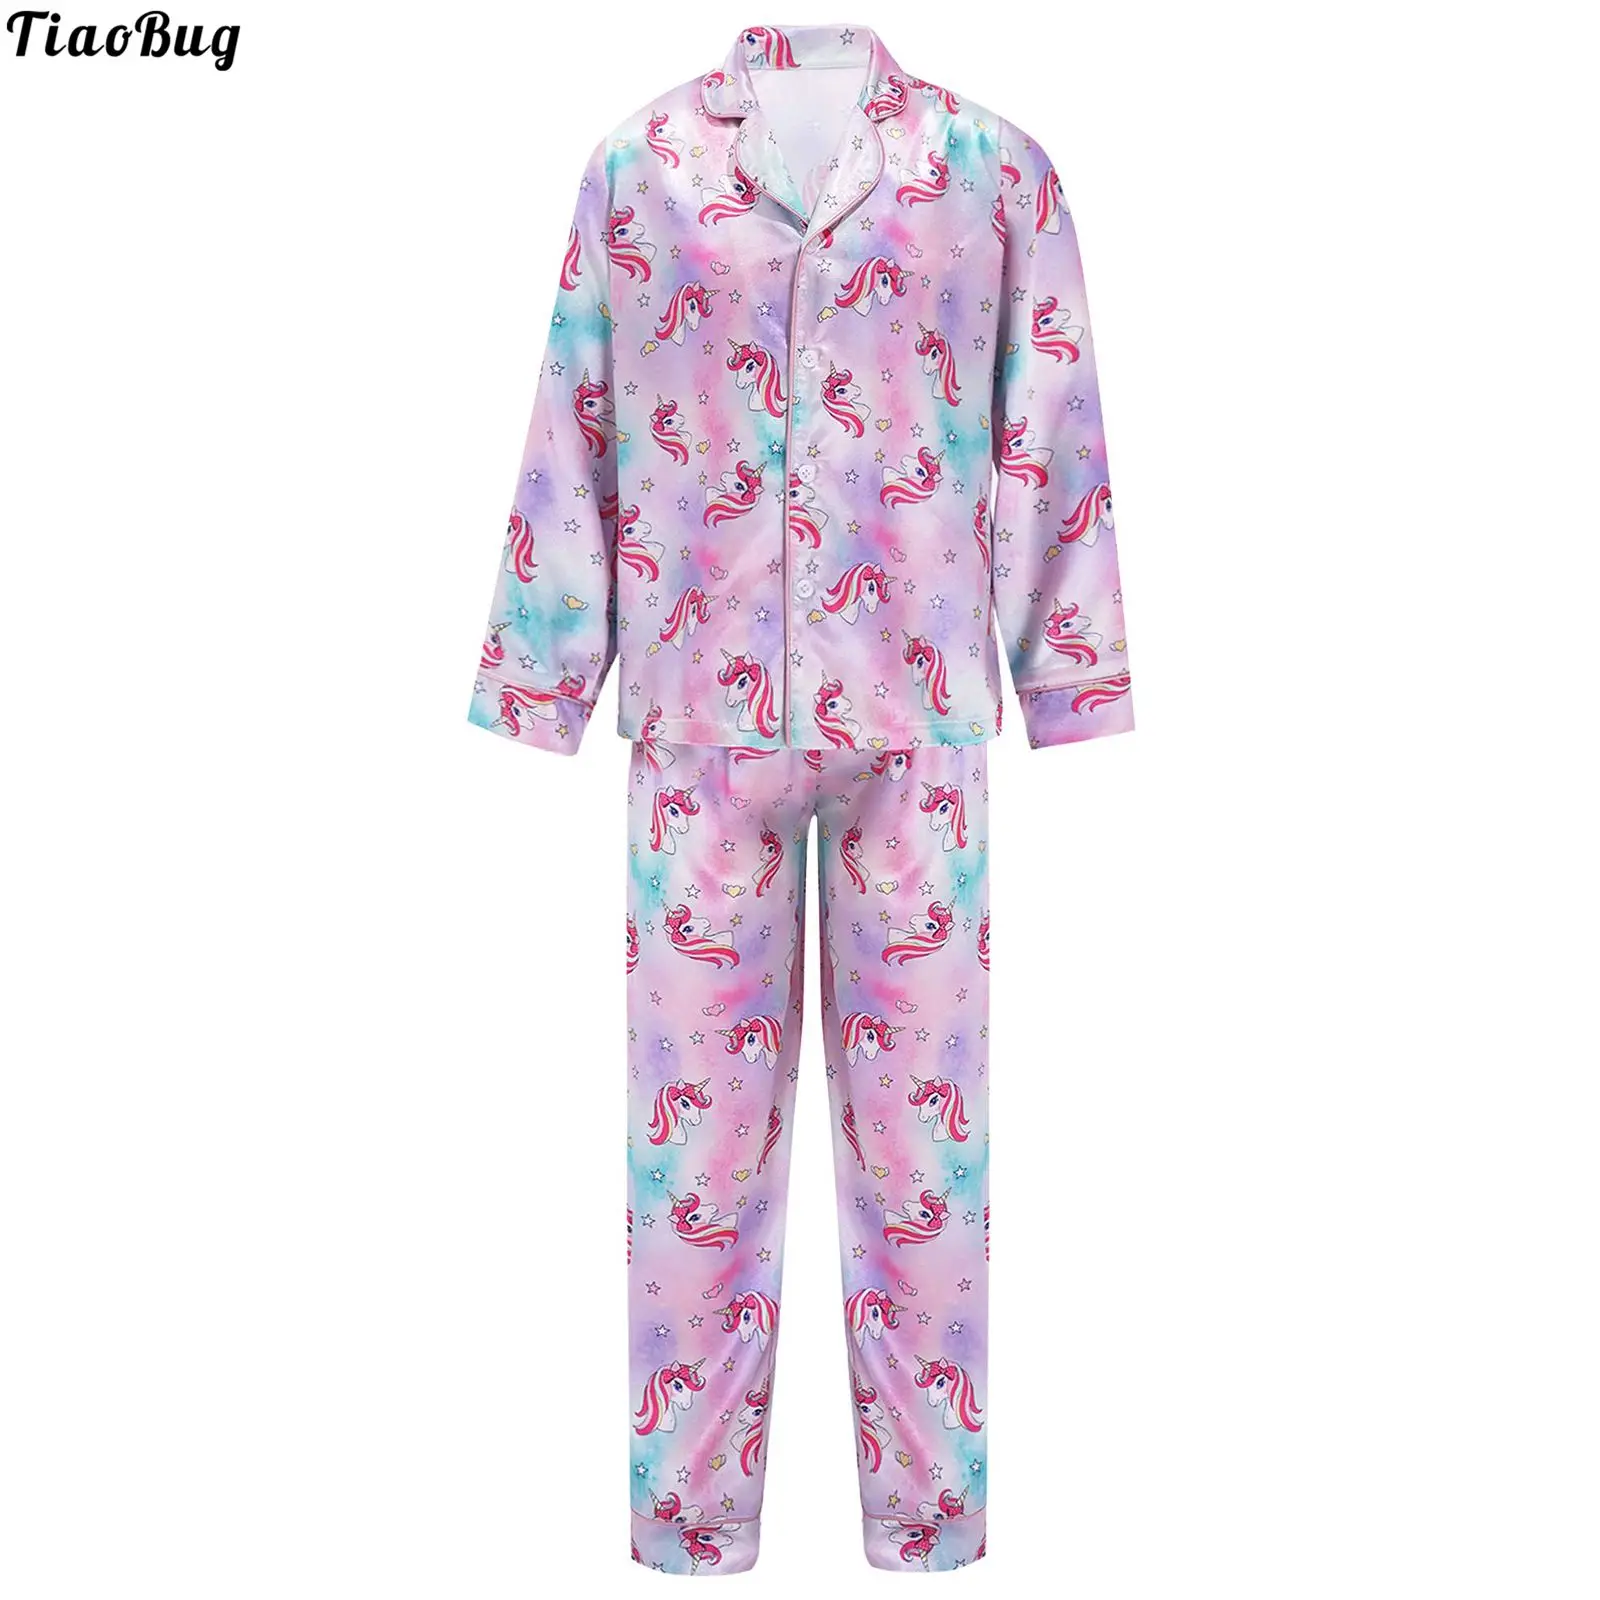 

Autumn Kids Girls 2Pcs Pajamas Set Lapel Collar Long Sleeves Front Buttons Cartoon Horse Print Shirt Tops And Pants Sleepwear